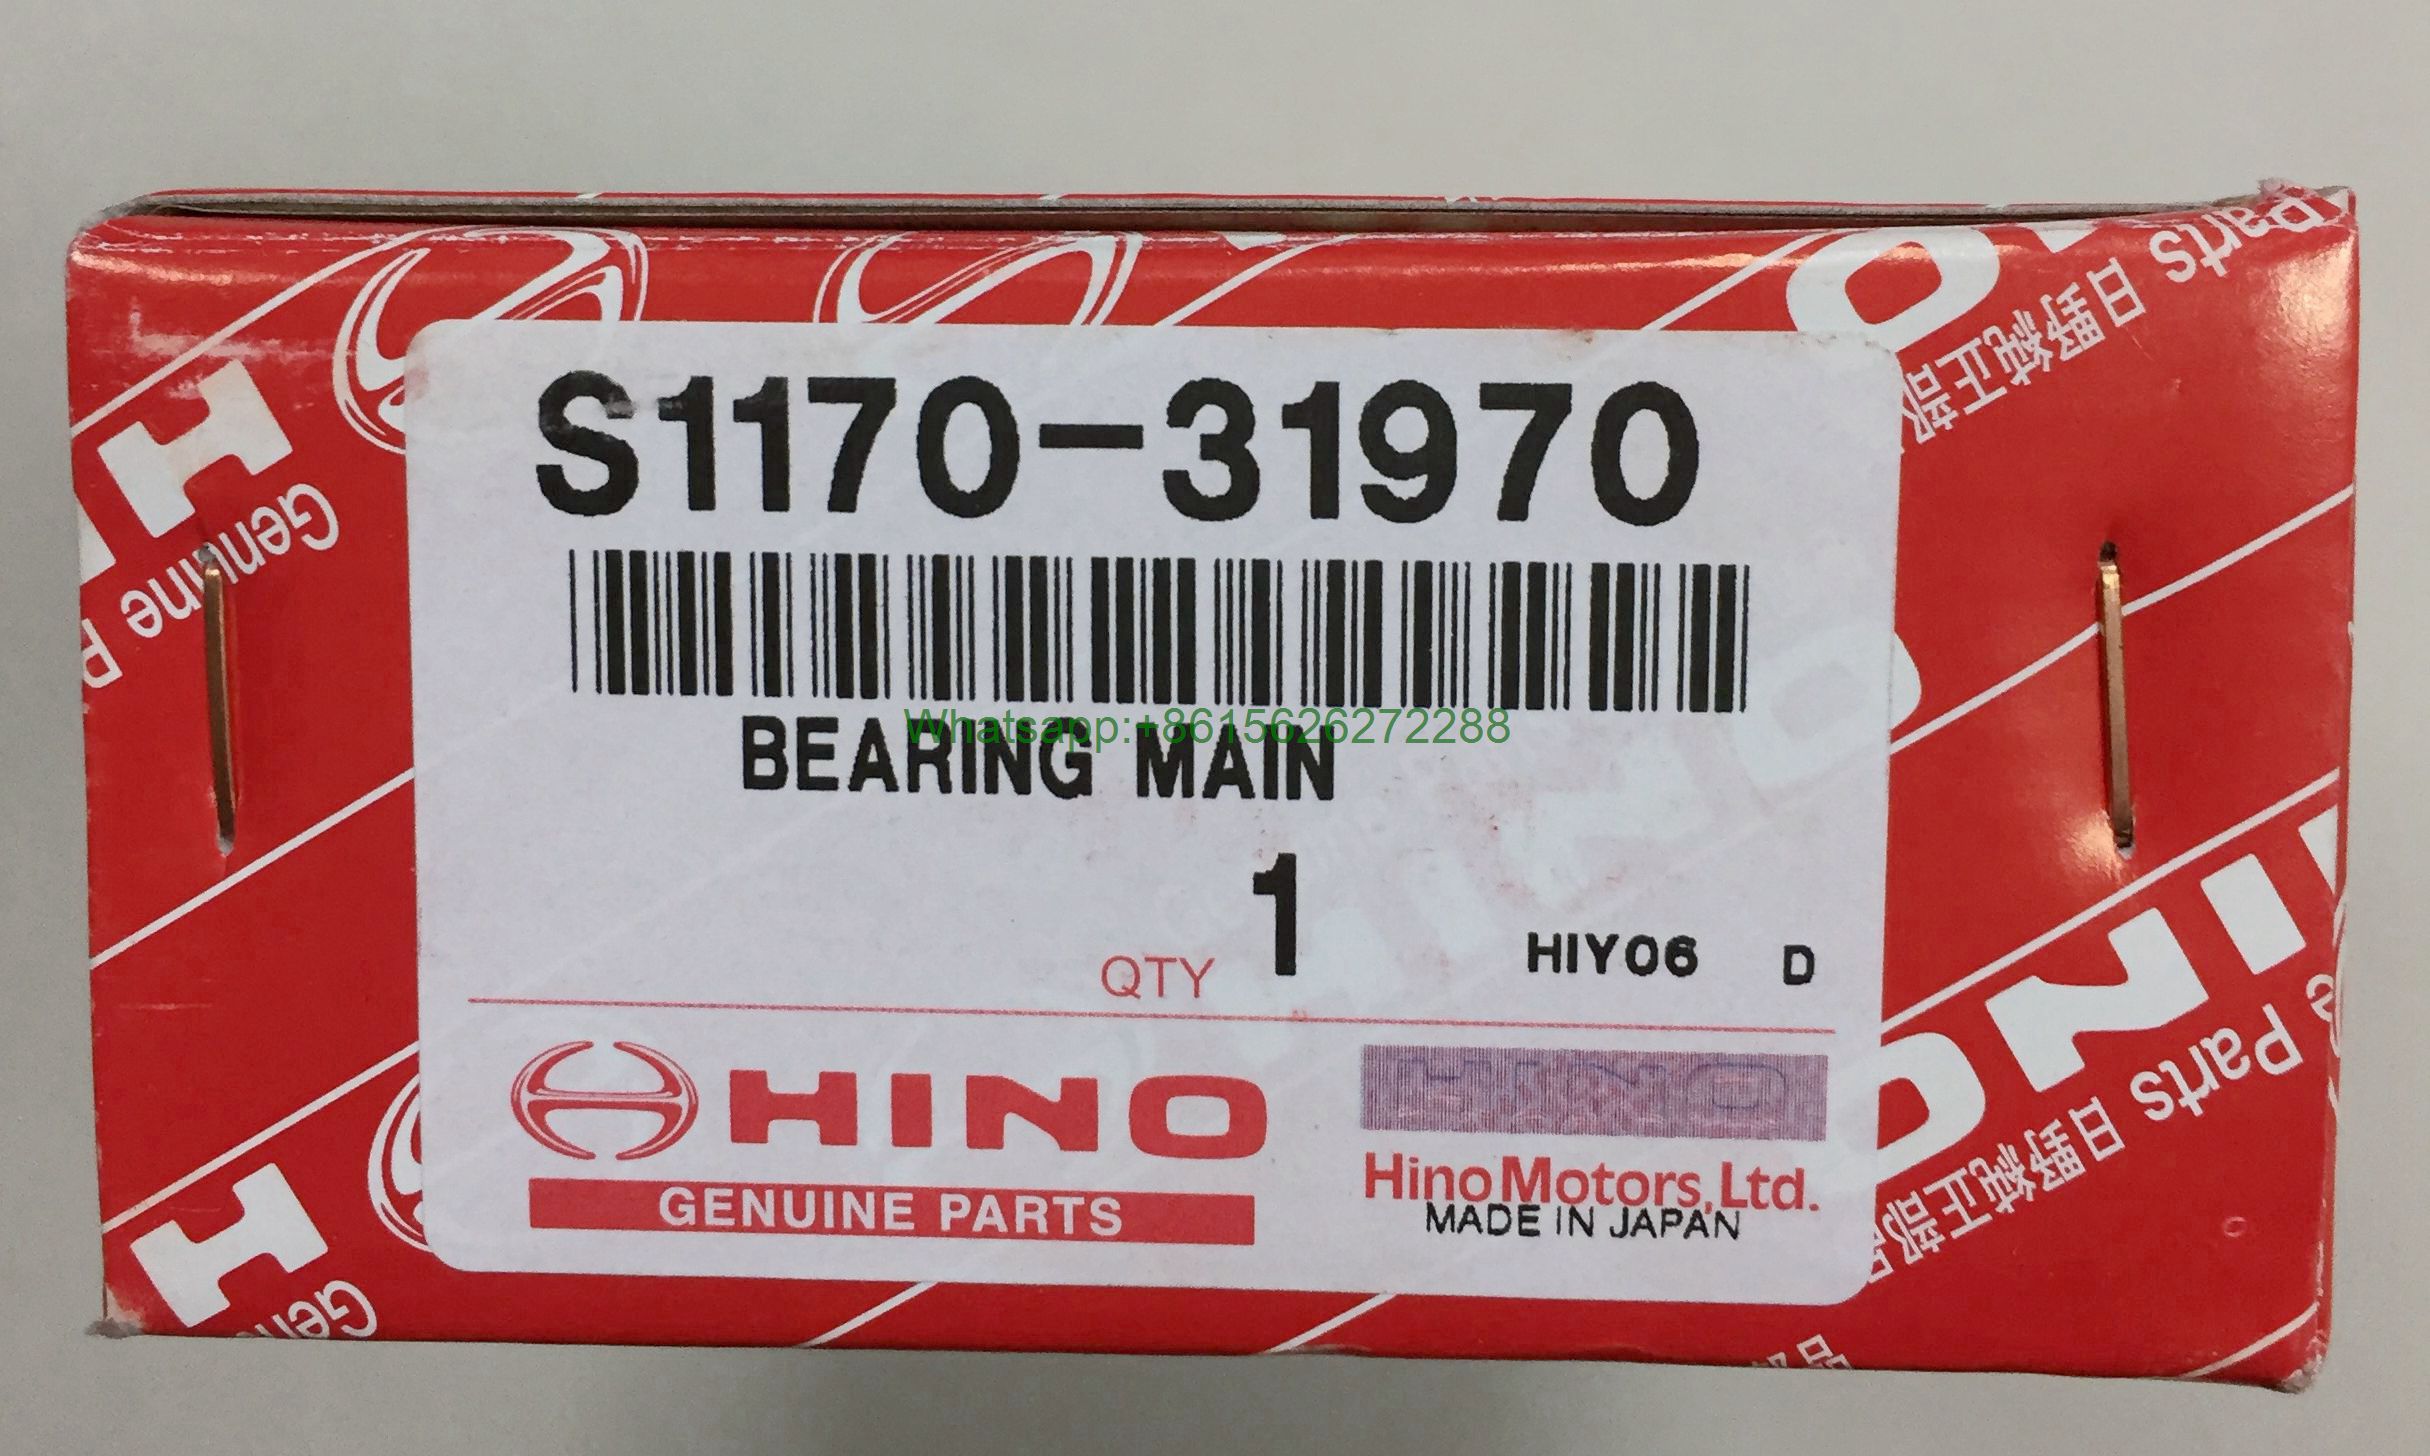 HINO BEARING MAIN OVERSIZE(0.25) S117031970 